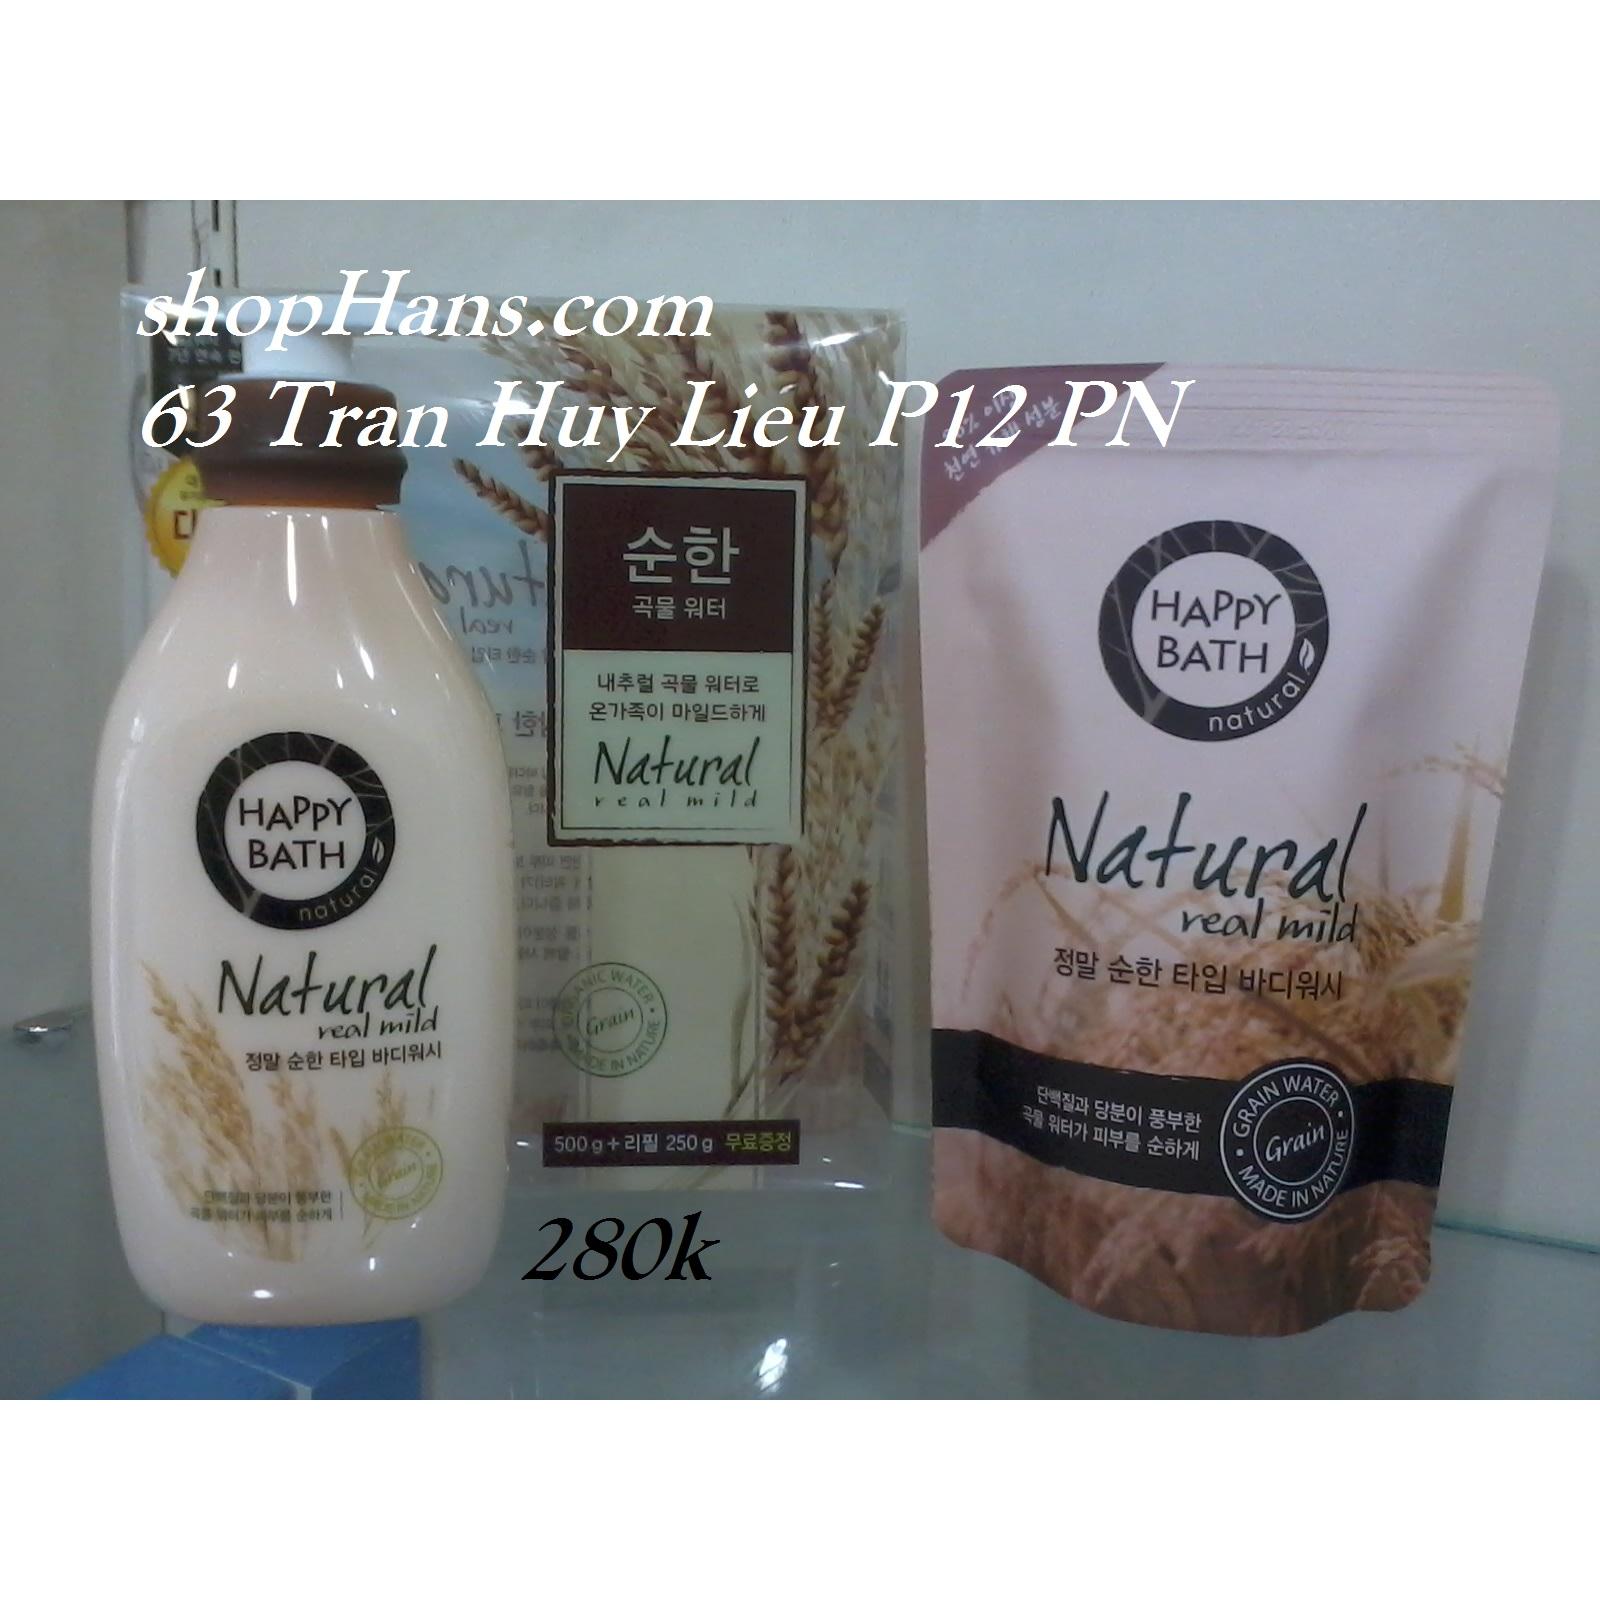 Sữa tắm Natural Real Mild Body Wash - Happy Bath 500gr + 250gr